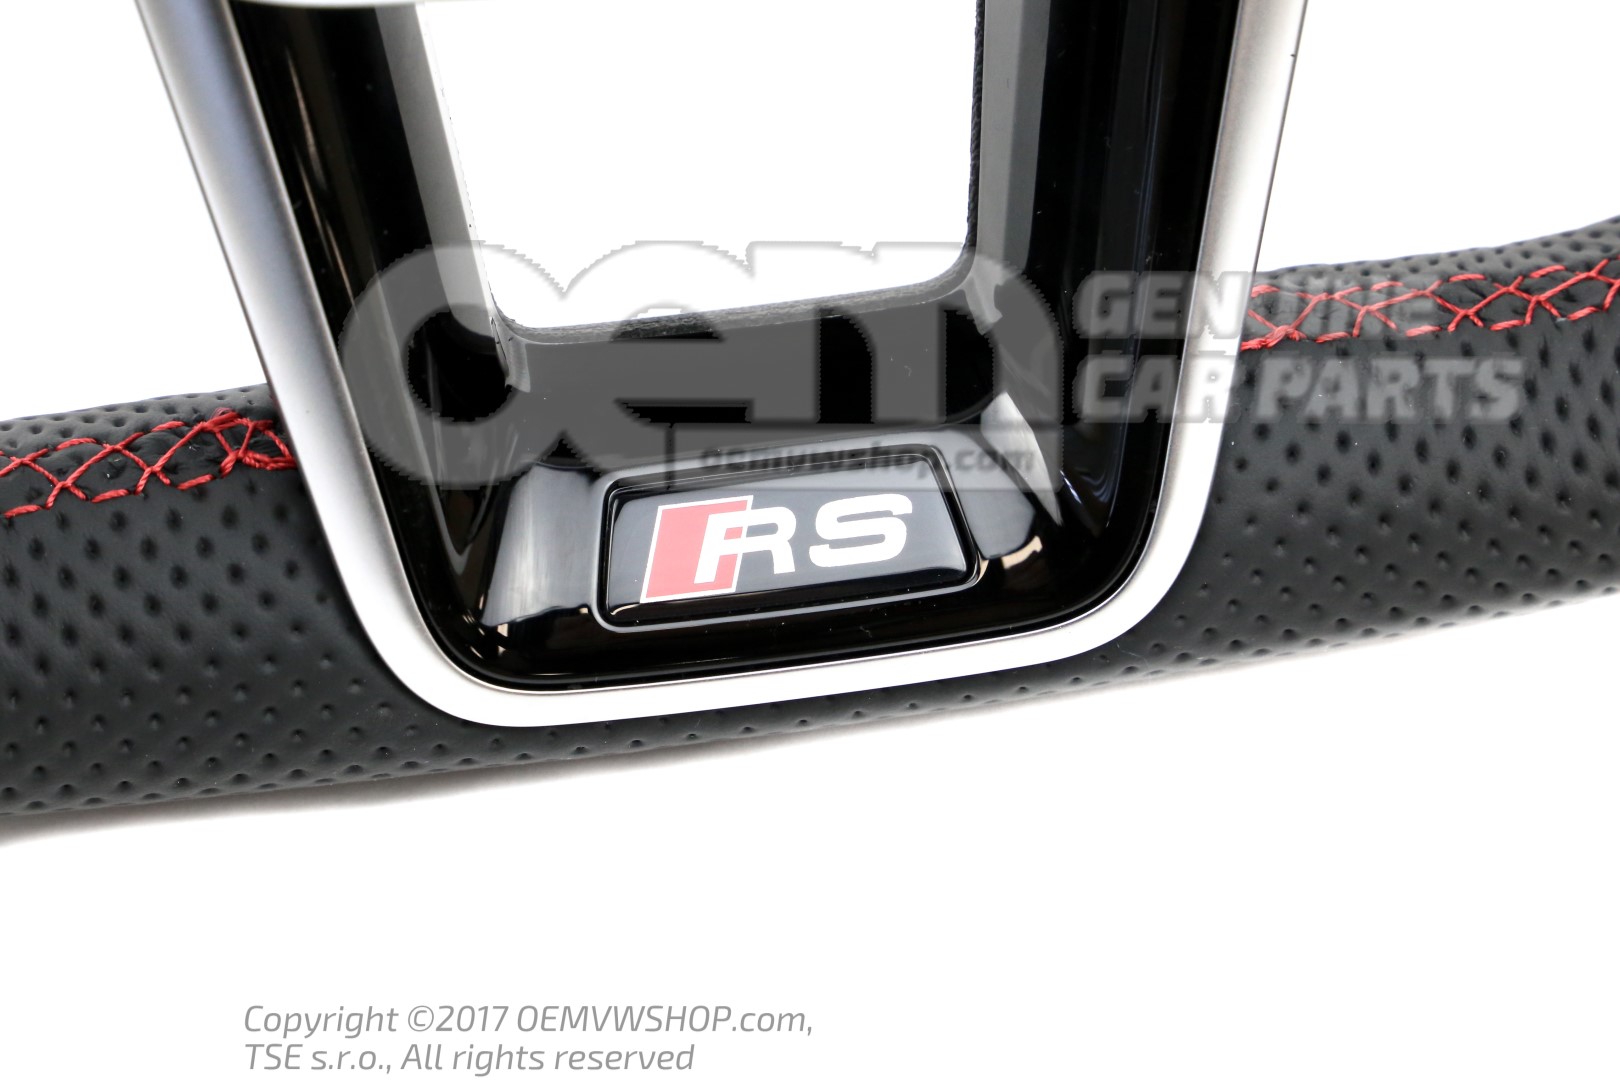 4K0419091BPTPE Volant chauffant multifonction en Alcantara pour Audi RS6,  RS7 C8 avec surpiqûres rouges.